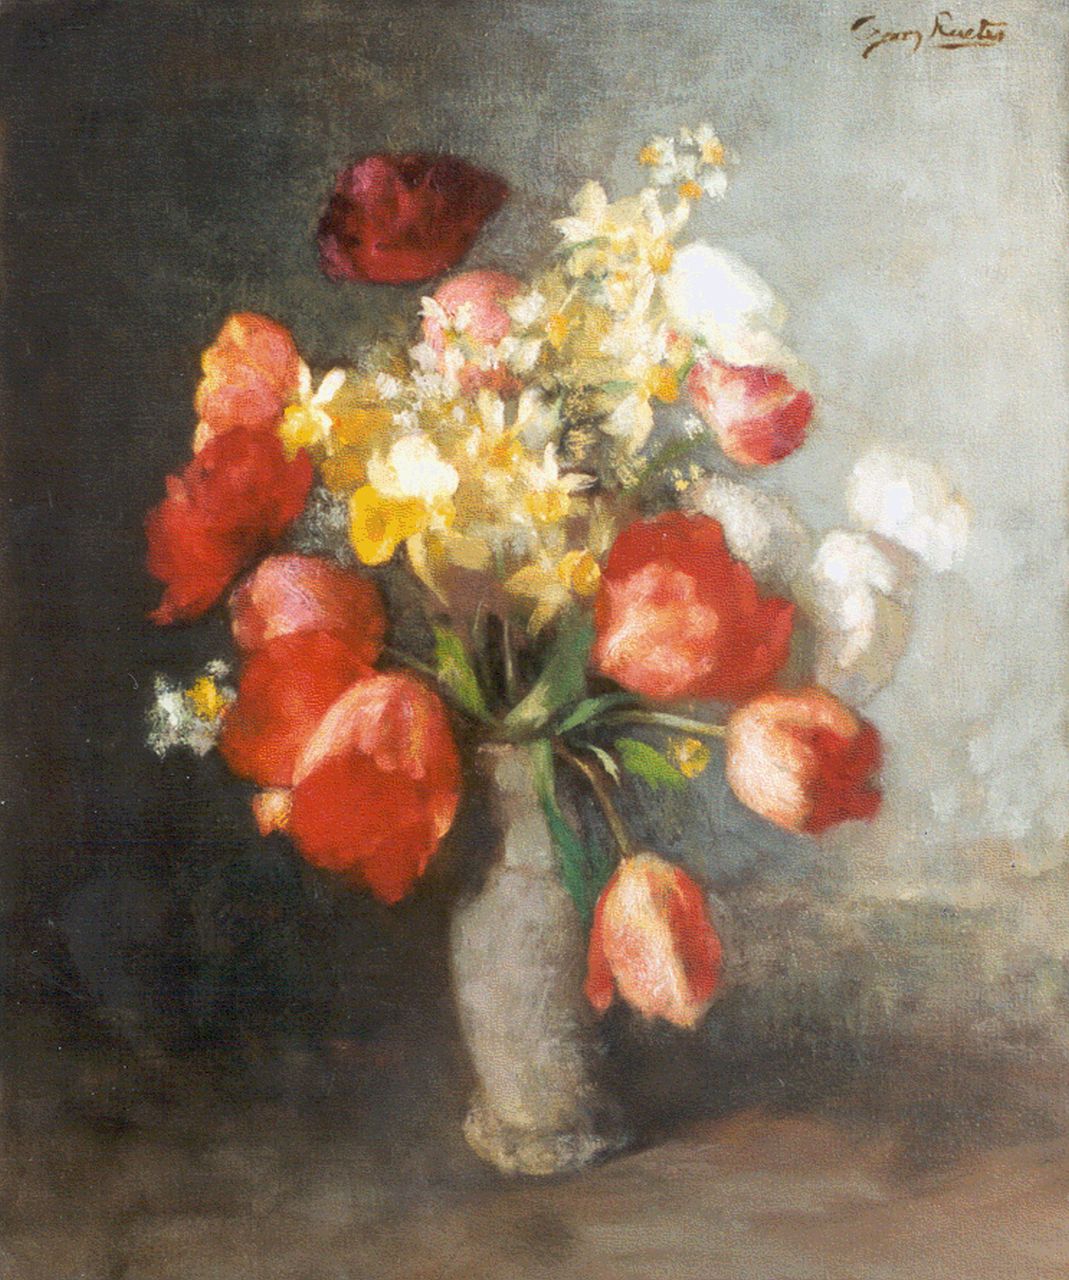 Rueter W.C.G.  | Wilhelm Christian 'Georg' Rueter, A still life with tulips and daffodils, Öl auf Leinwand 59,5 x 51,0 cm, signed u.r.